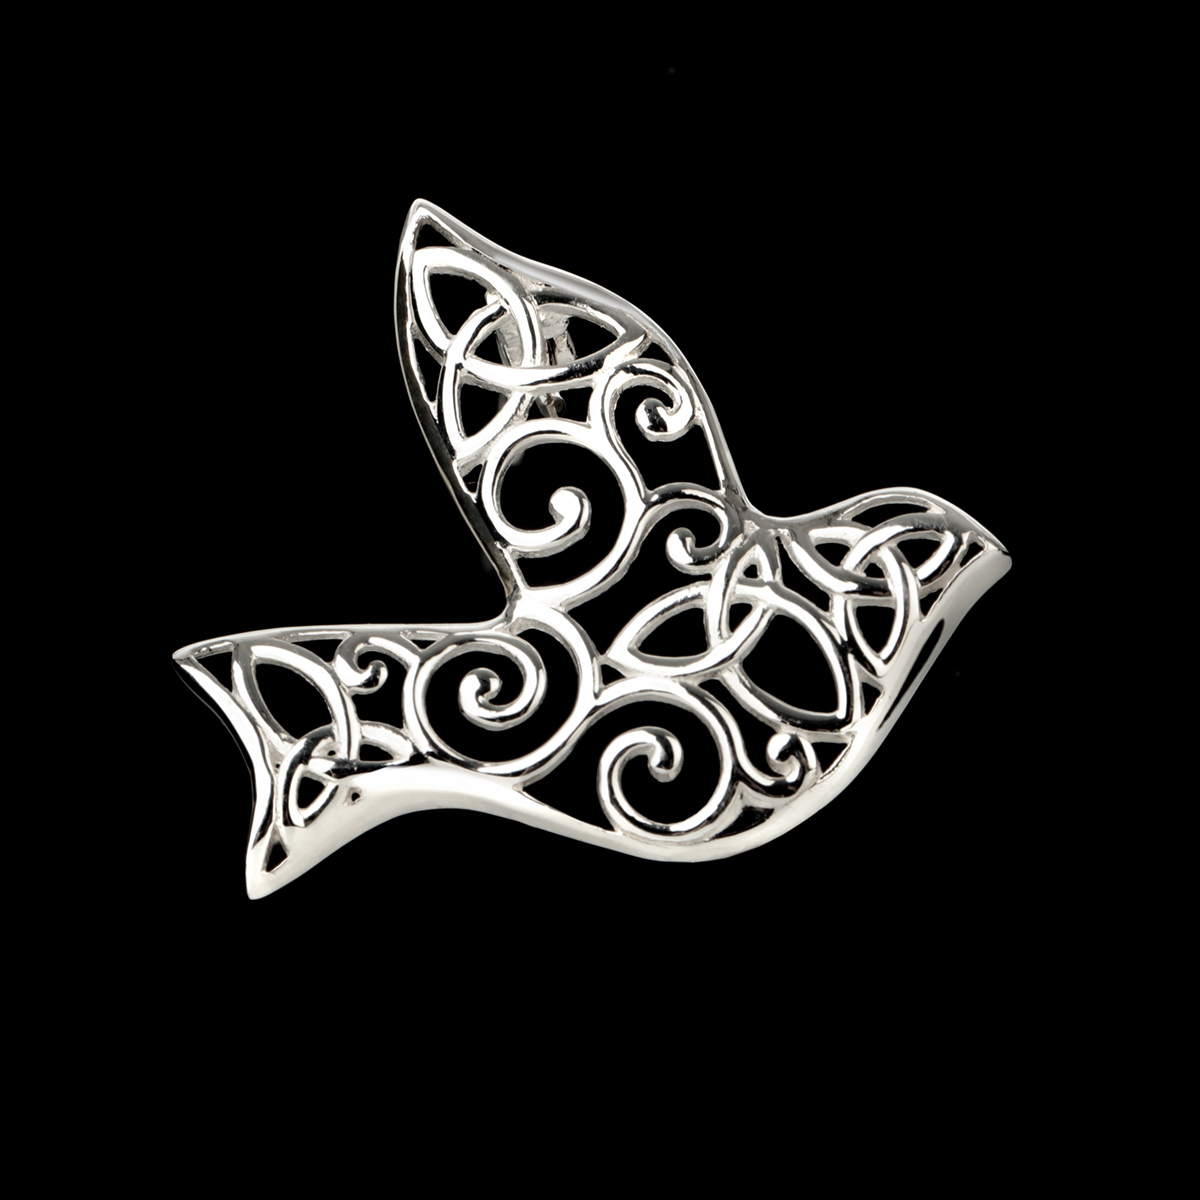 Iona Abbey Dove Brosche - keltisch inspirierte Taube aus Sterling Silber